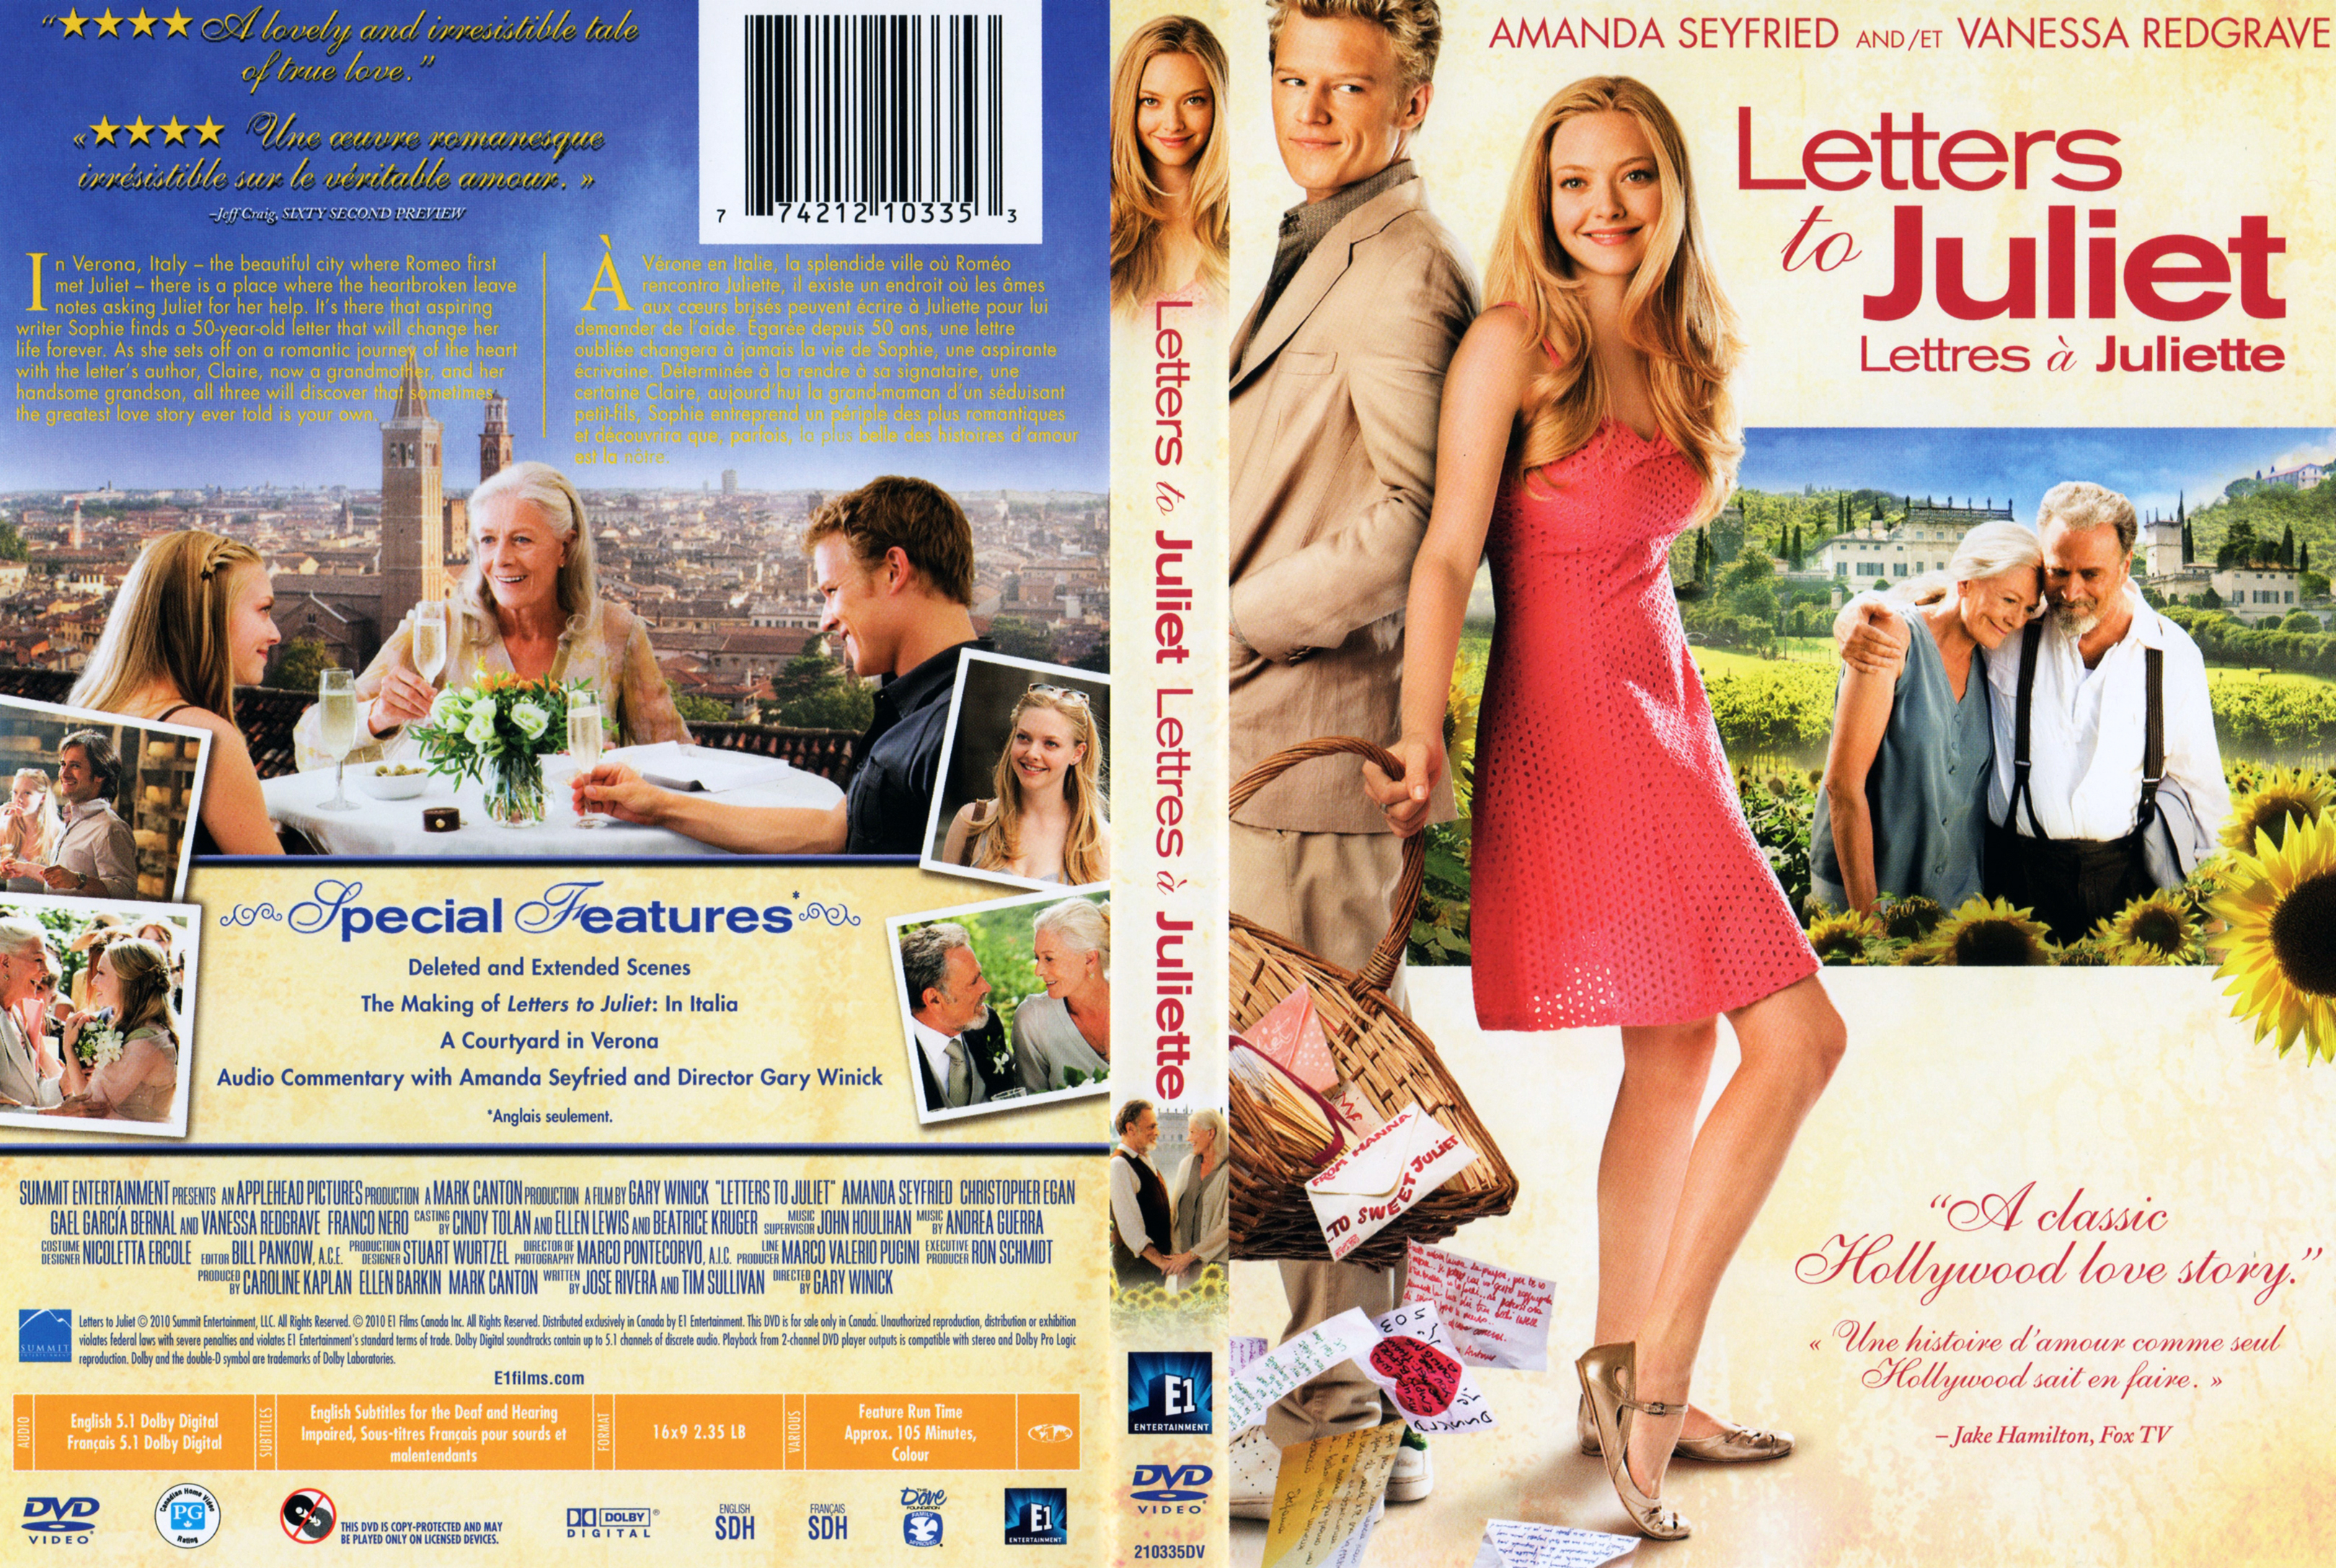 Jaquette DVD Letters to Juliet - Lettres  Juliette (Canadienne)